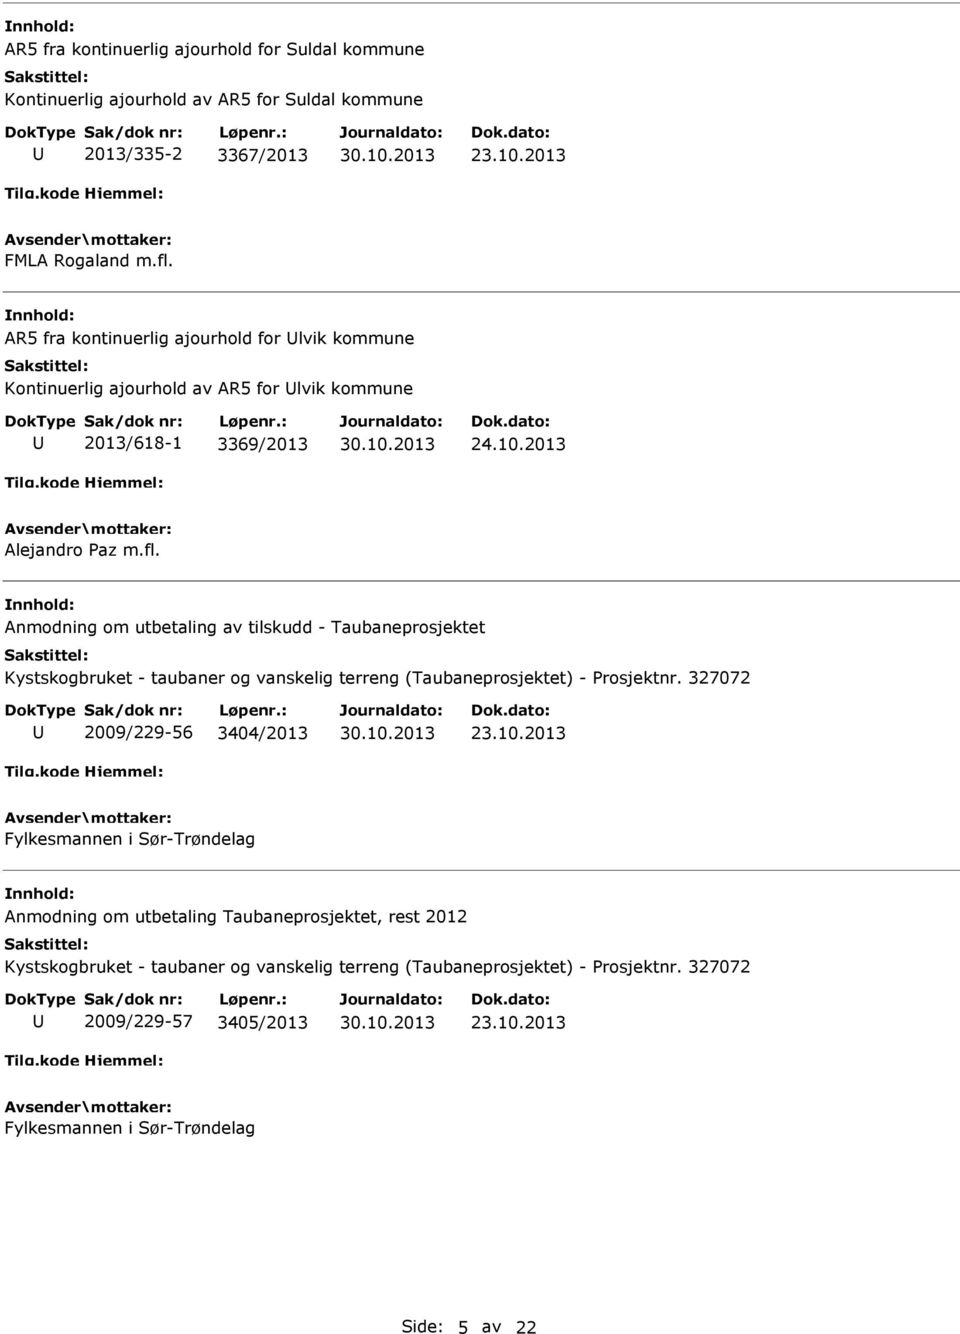 nmodning om utbetaling av tilskudd - Taubaneprosjektet Kystskogbruket - taubaner og vanskelig terreng (Taubaneprosjektet) - Prosjektnr. 327072 2009/229-56 3404/2013 23.10.